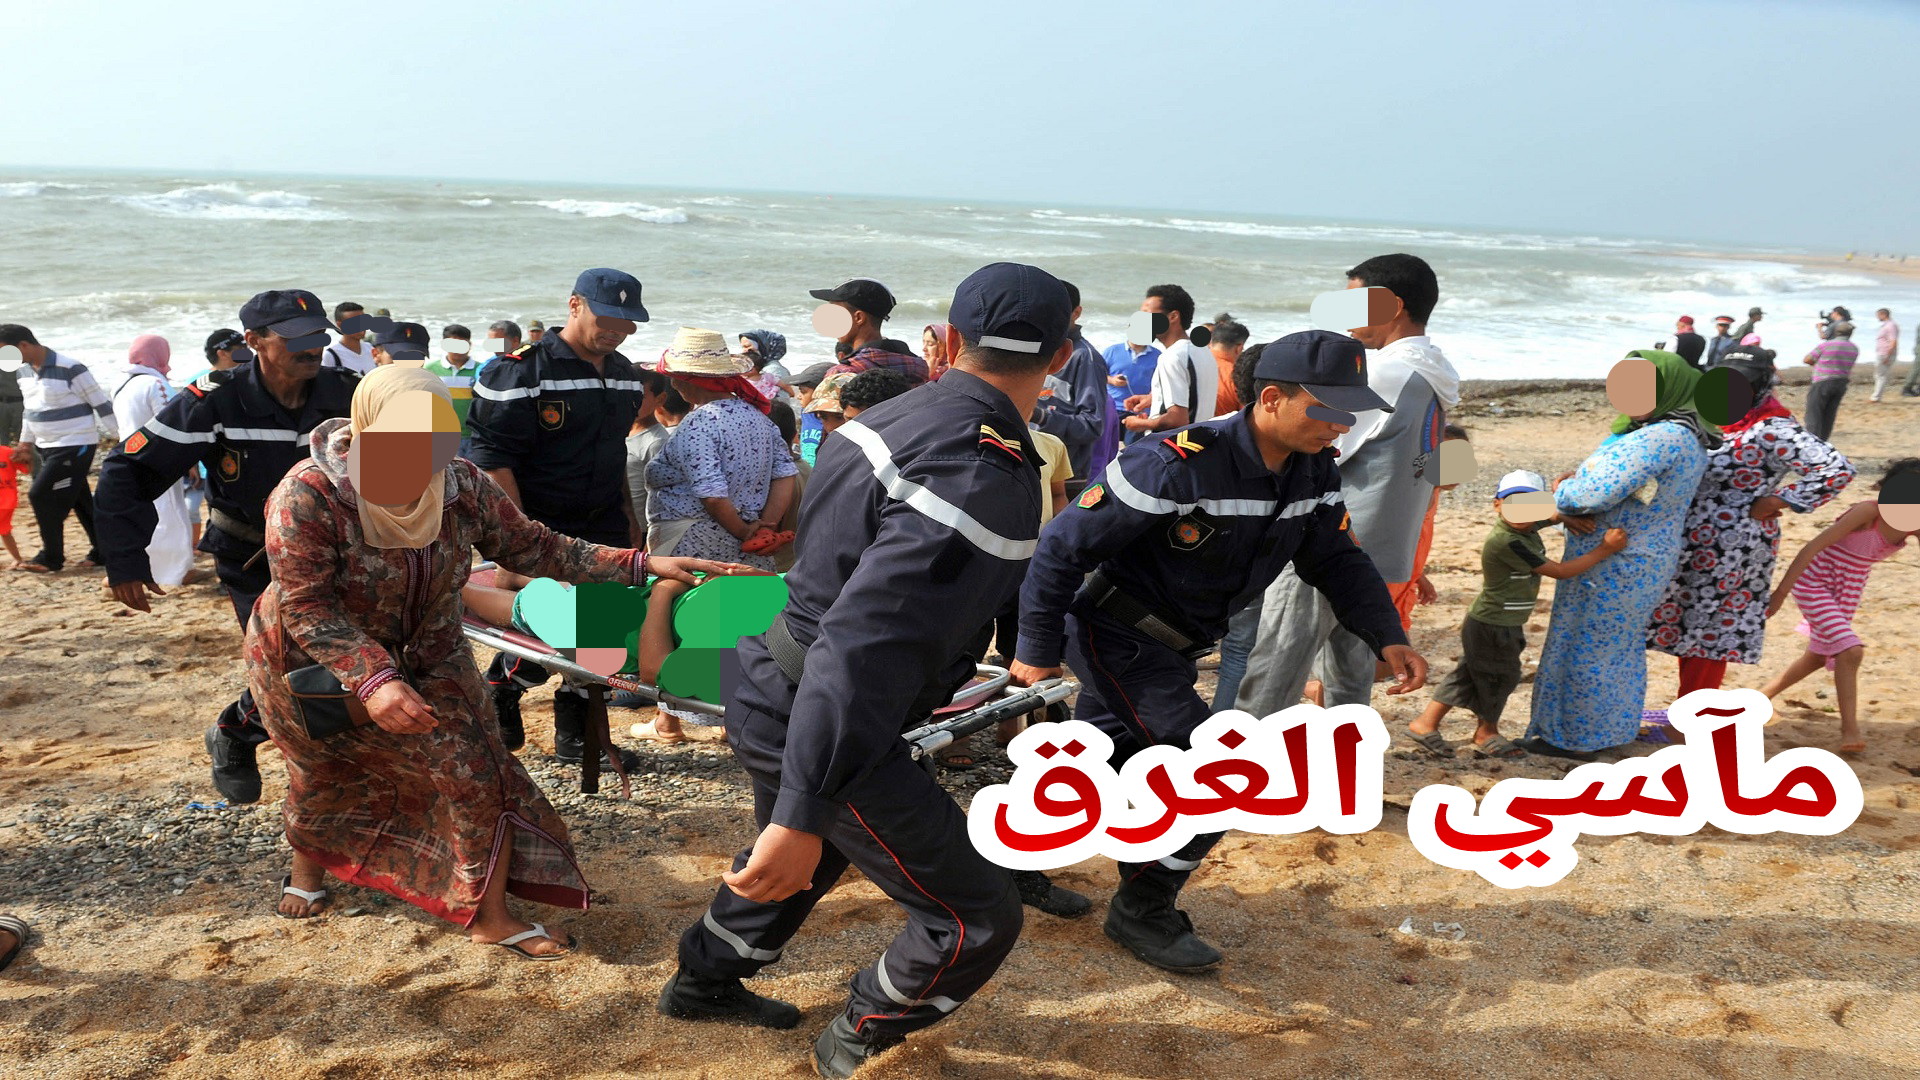 المغرب يسجل حصيلة مؤسفة في الغرق بالشواطئ منذ بداية الصيف:” 32 متوفى و20 مفقود وانقاد ازيد من 9 الاف “